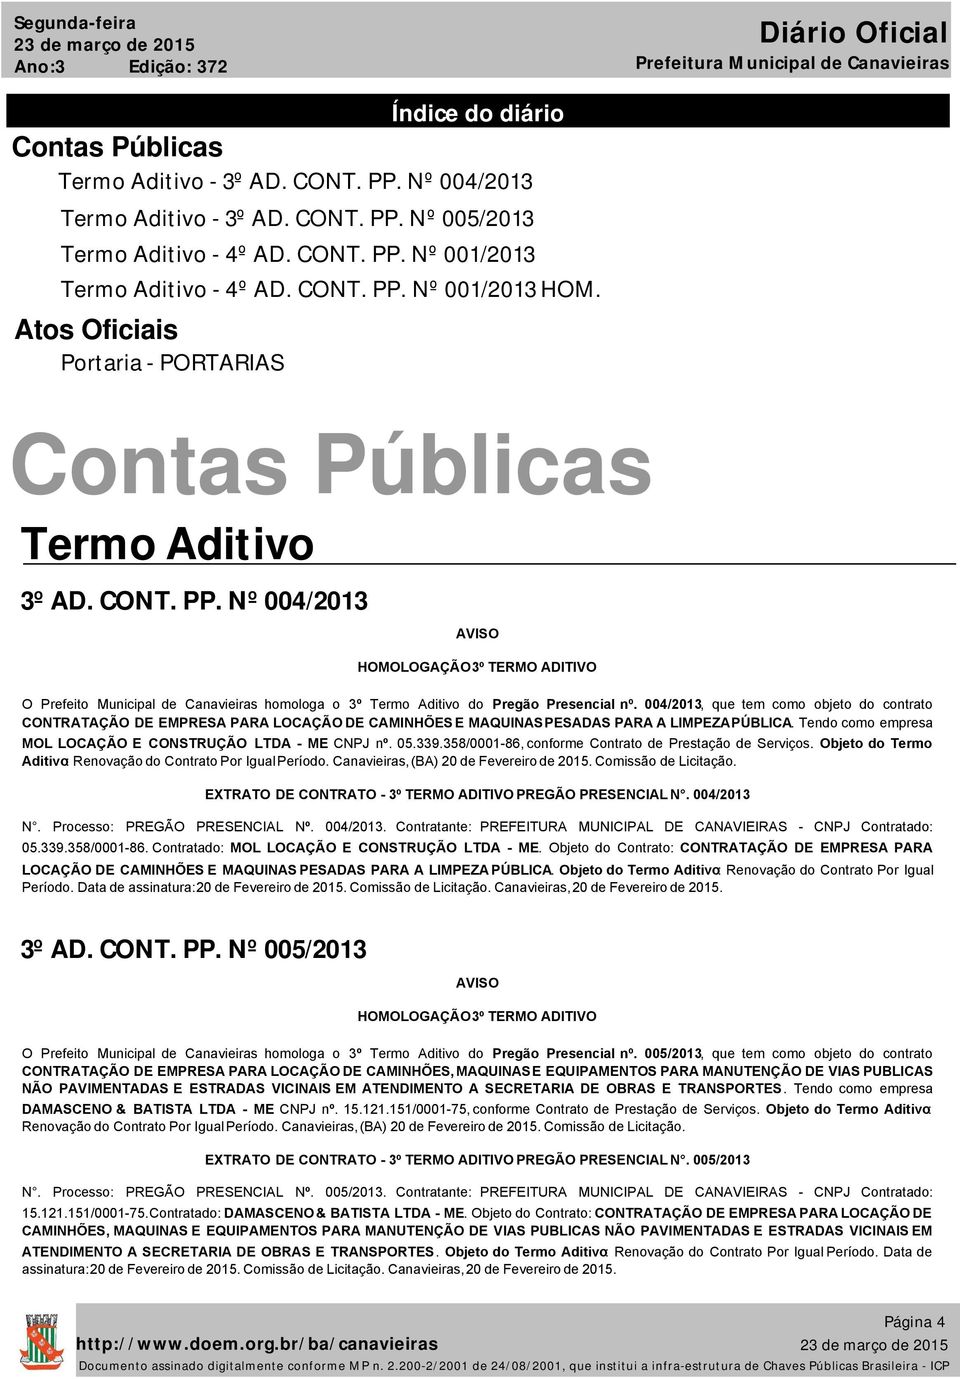 004/2013, que tem como objeto do contrato CONTRATAÇÃO DE EMPRESA PARA LOCAÇÃO DE CAMINHÕES E MAQUINASPESADAS PARA A LIMPEZAPÚBLICA. Tendo como empresa MOL LOCAÇÃO E CONSTRUÇÃO LTDA - ME CNPJ nº. 05.